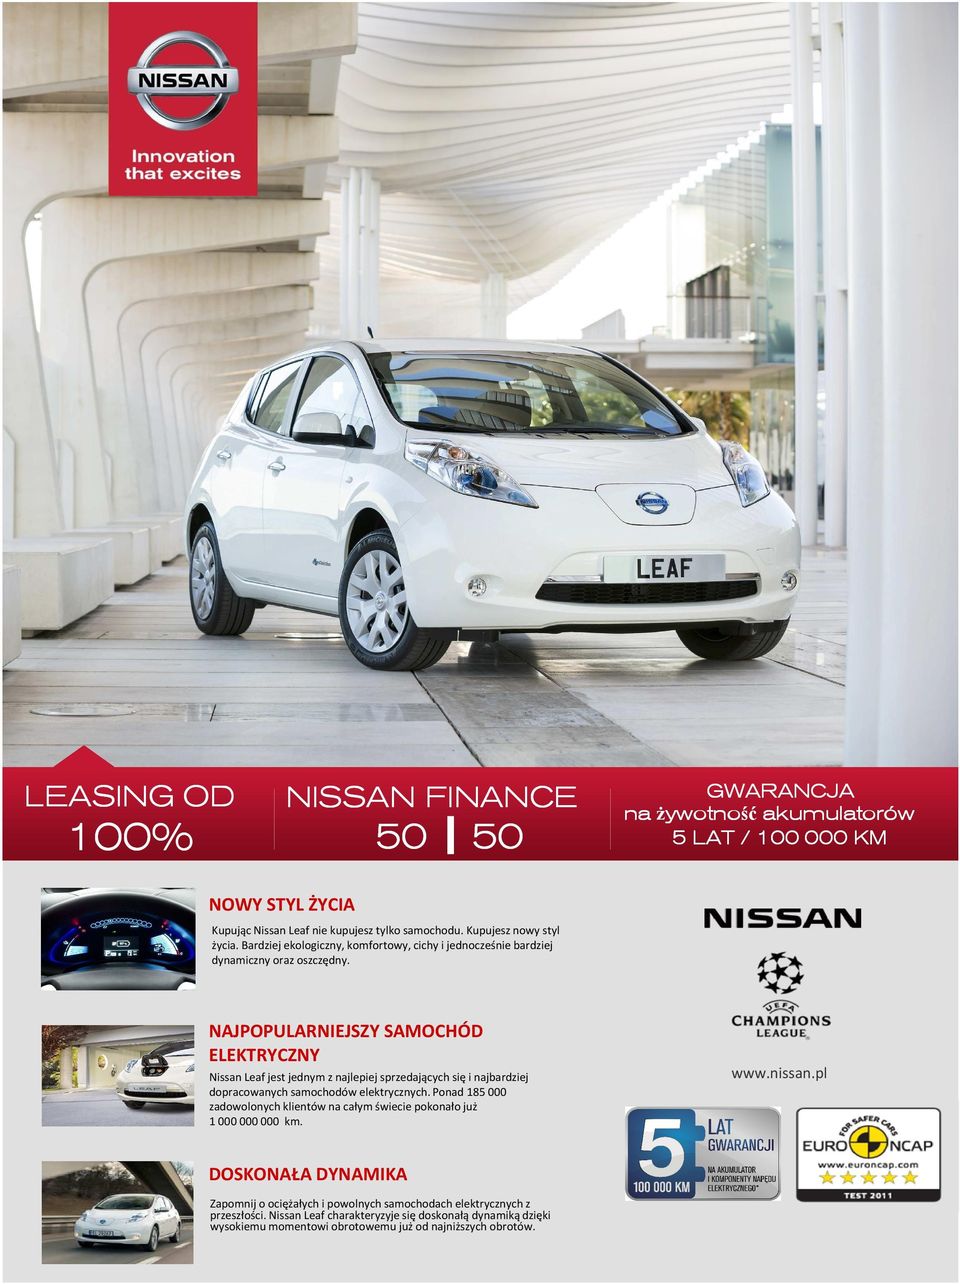 NAJPOPULARNIEJSZY SAMOCHÓD ELEKTRYCZNY Nissan Leaf jest jednym z najlepiej sprzedających się i najbardziej dopracowanych samochodów elektrycznych.